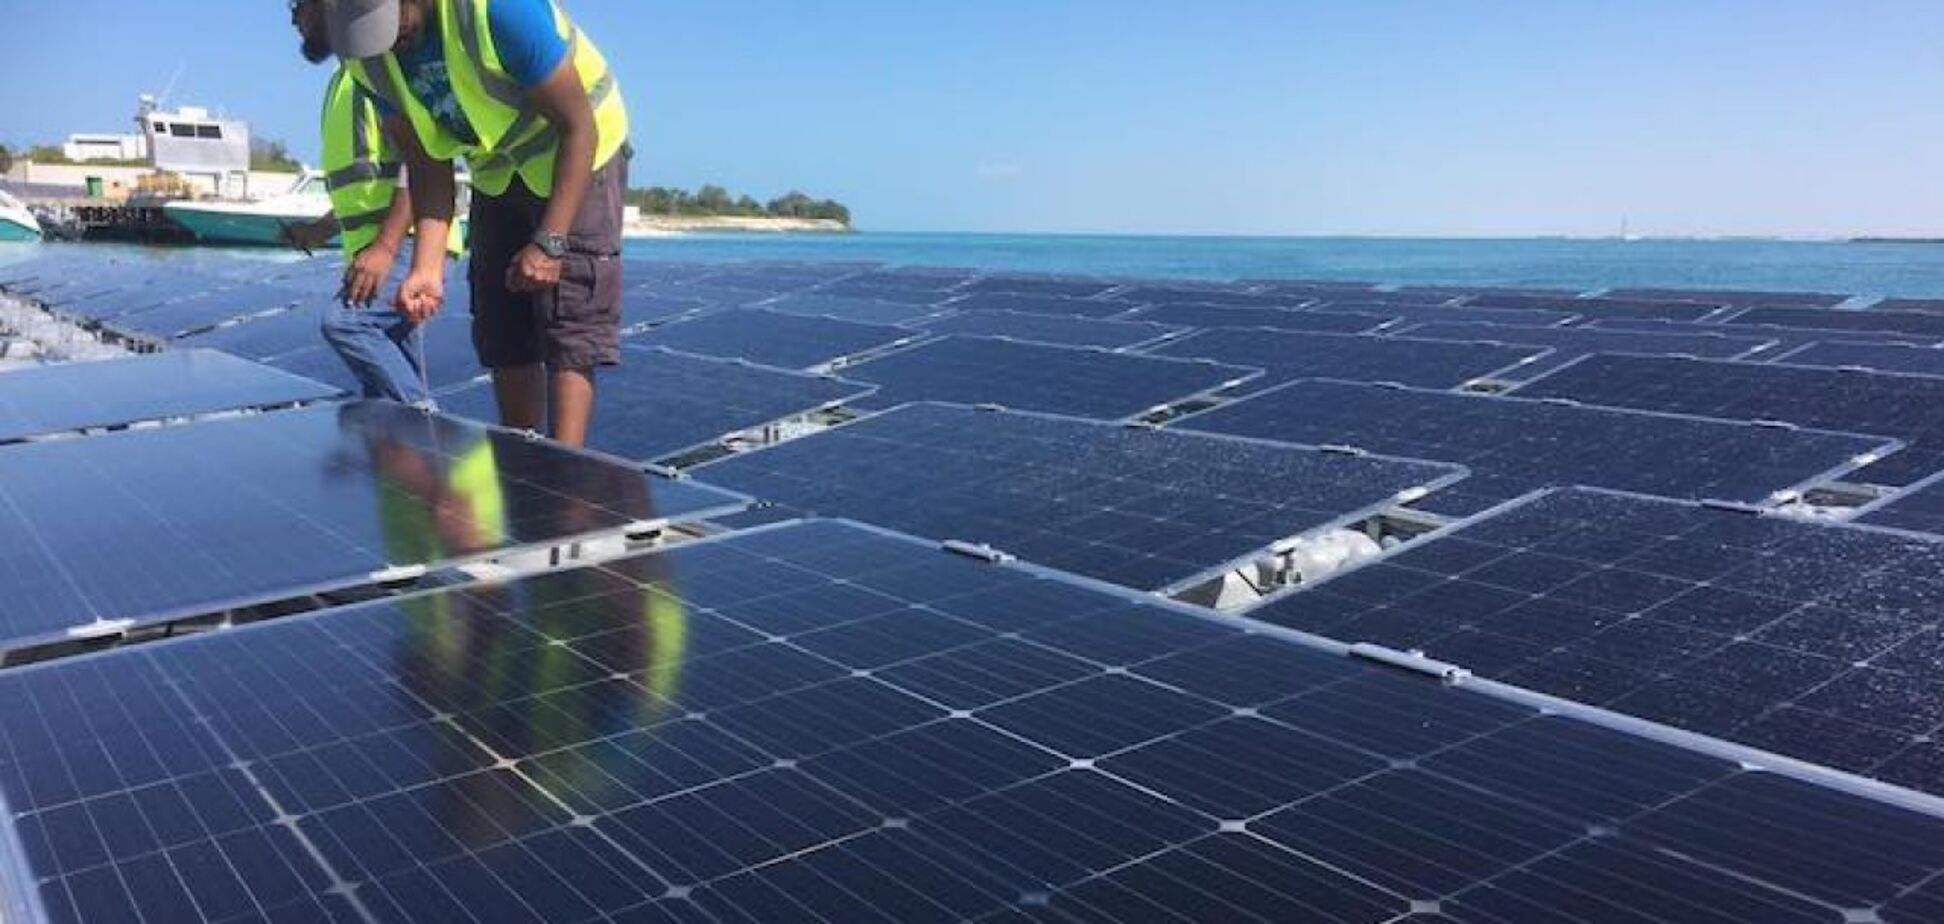 Зелений рай: в Еміратах острів для туристів перевели на плавучу енергію сонця